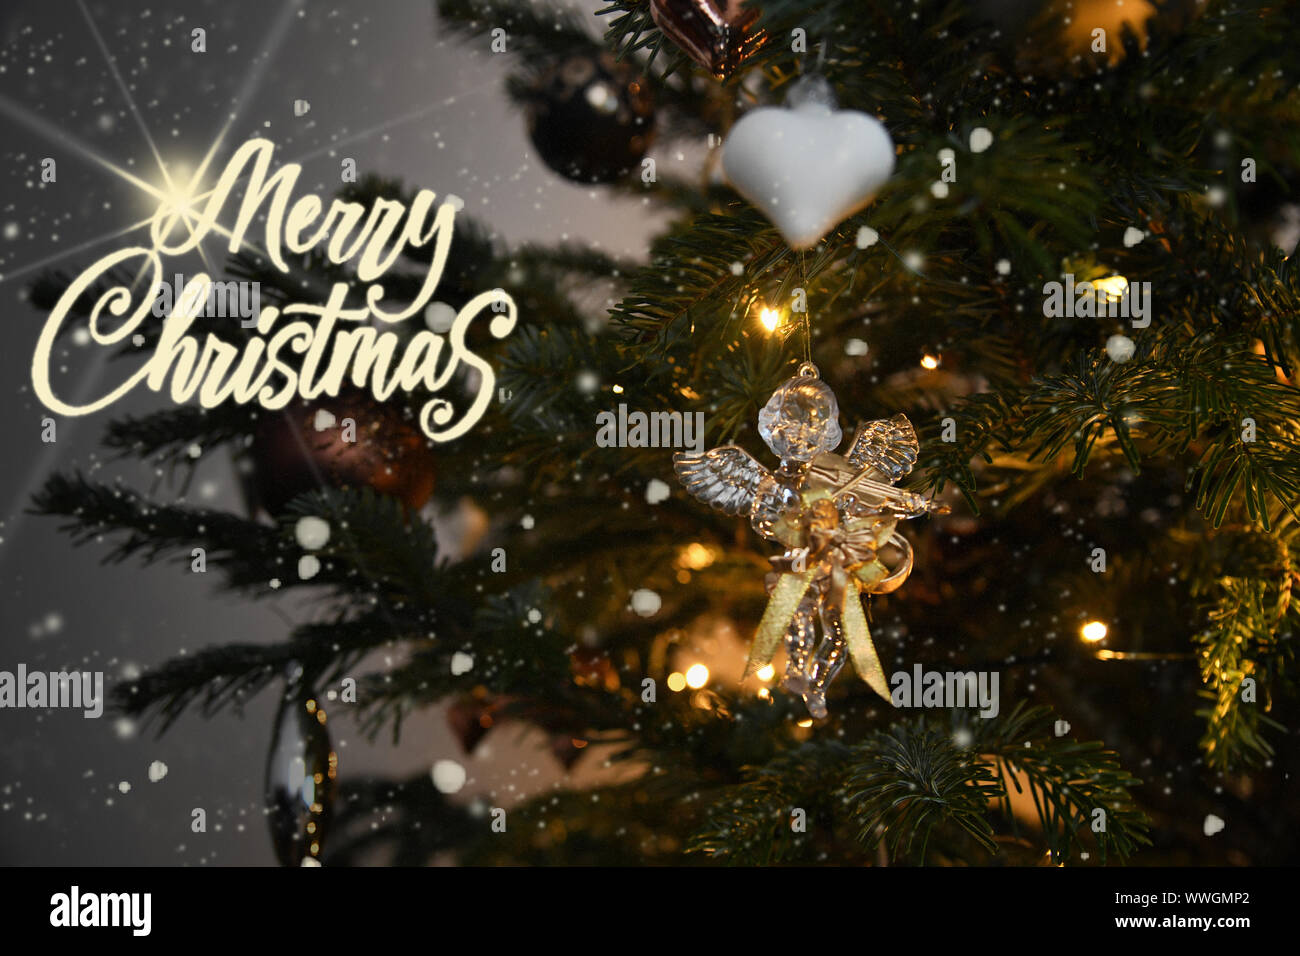 Christmas Angel Vintage Illustration Stockfotos und -bilder Kaufen - Alamy